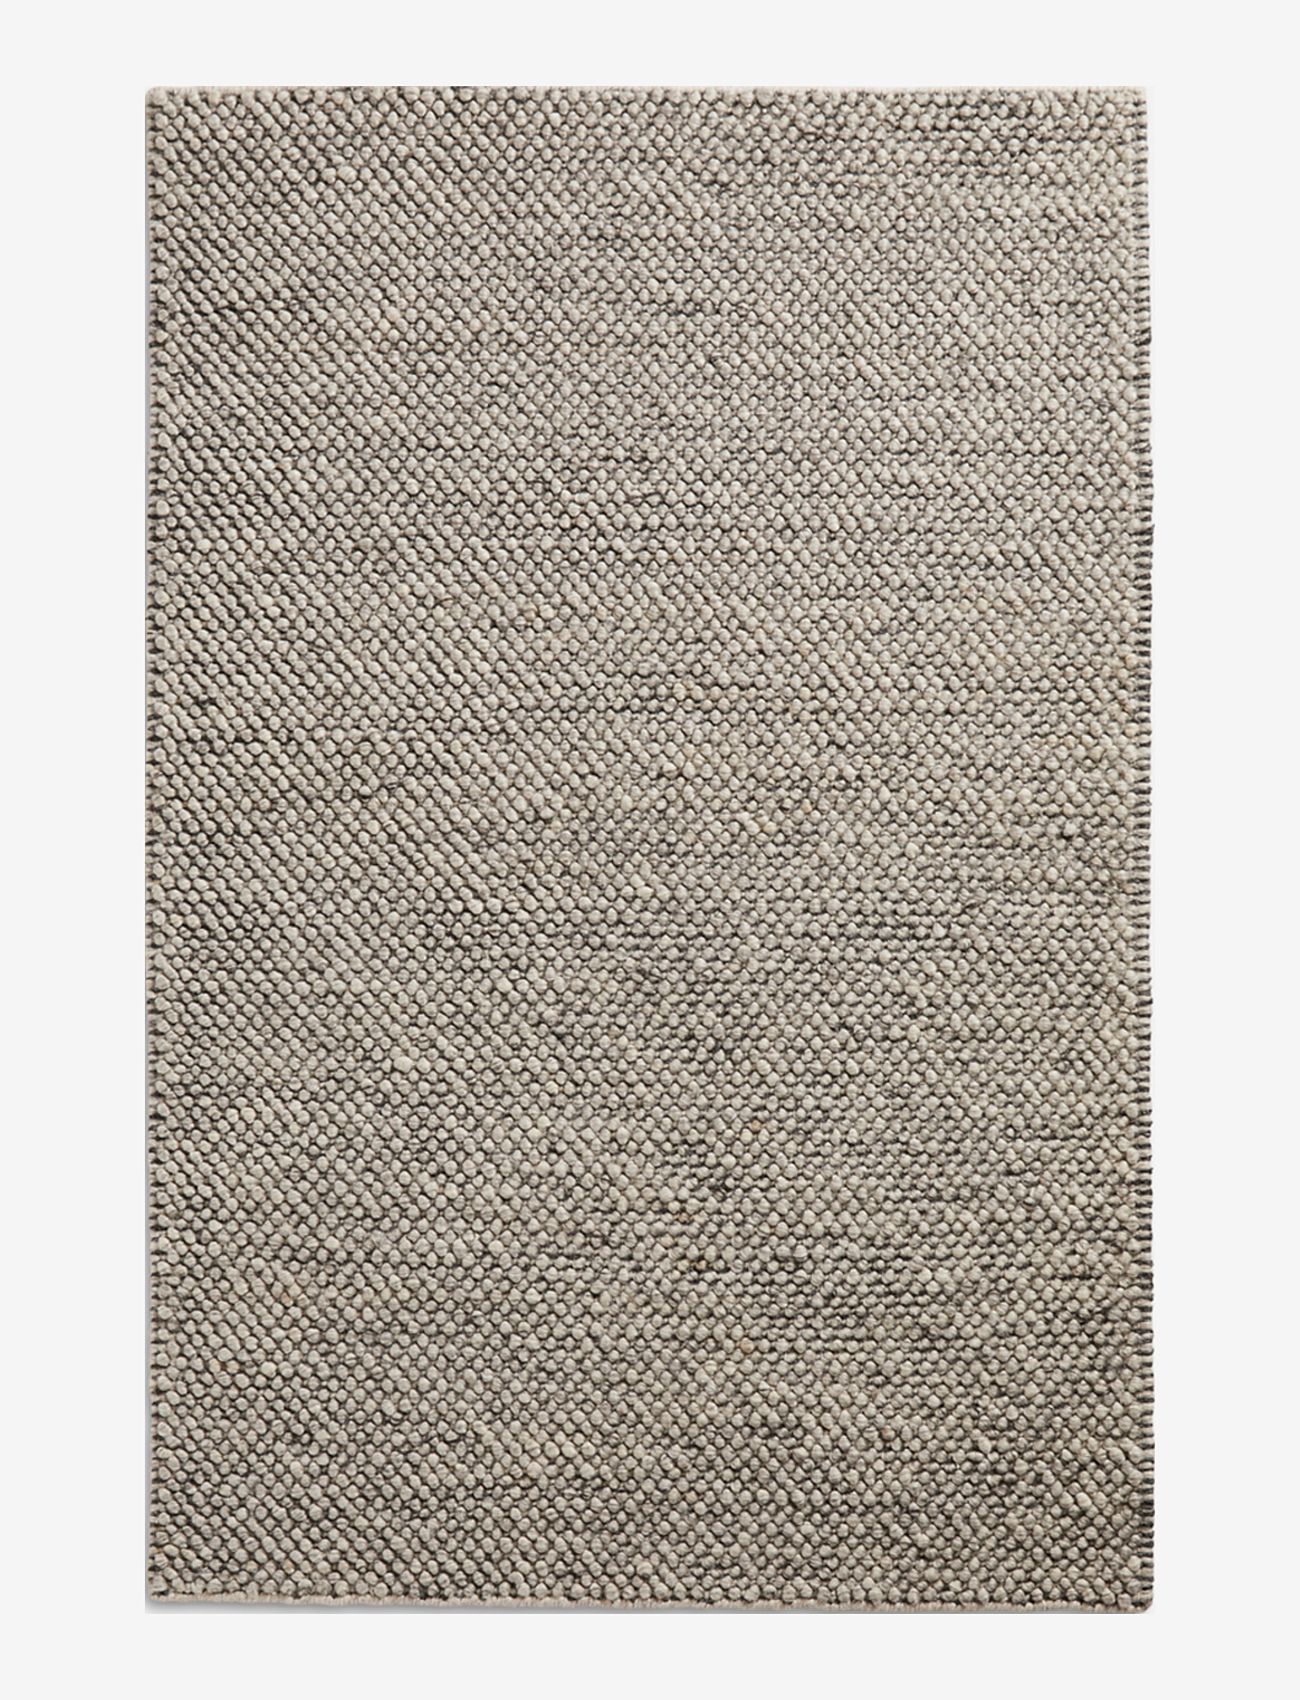 WOUD - Tact rug - kokvilnas paklāji & lupatu paklājs - dark grey - 0